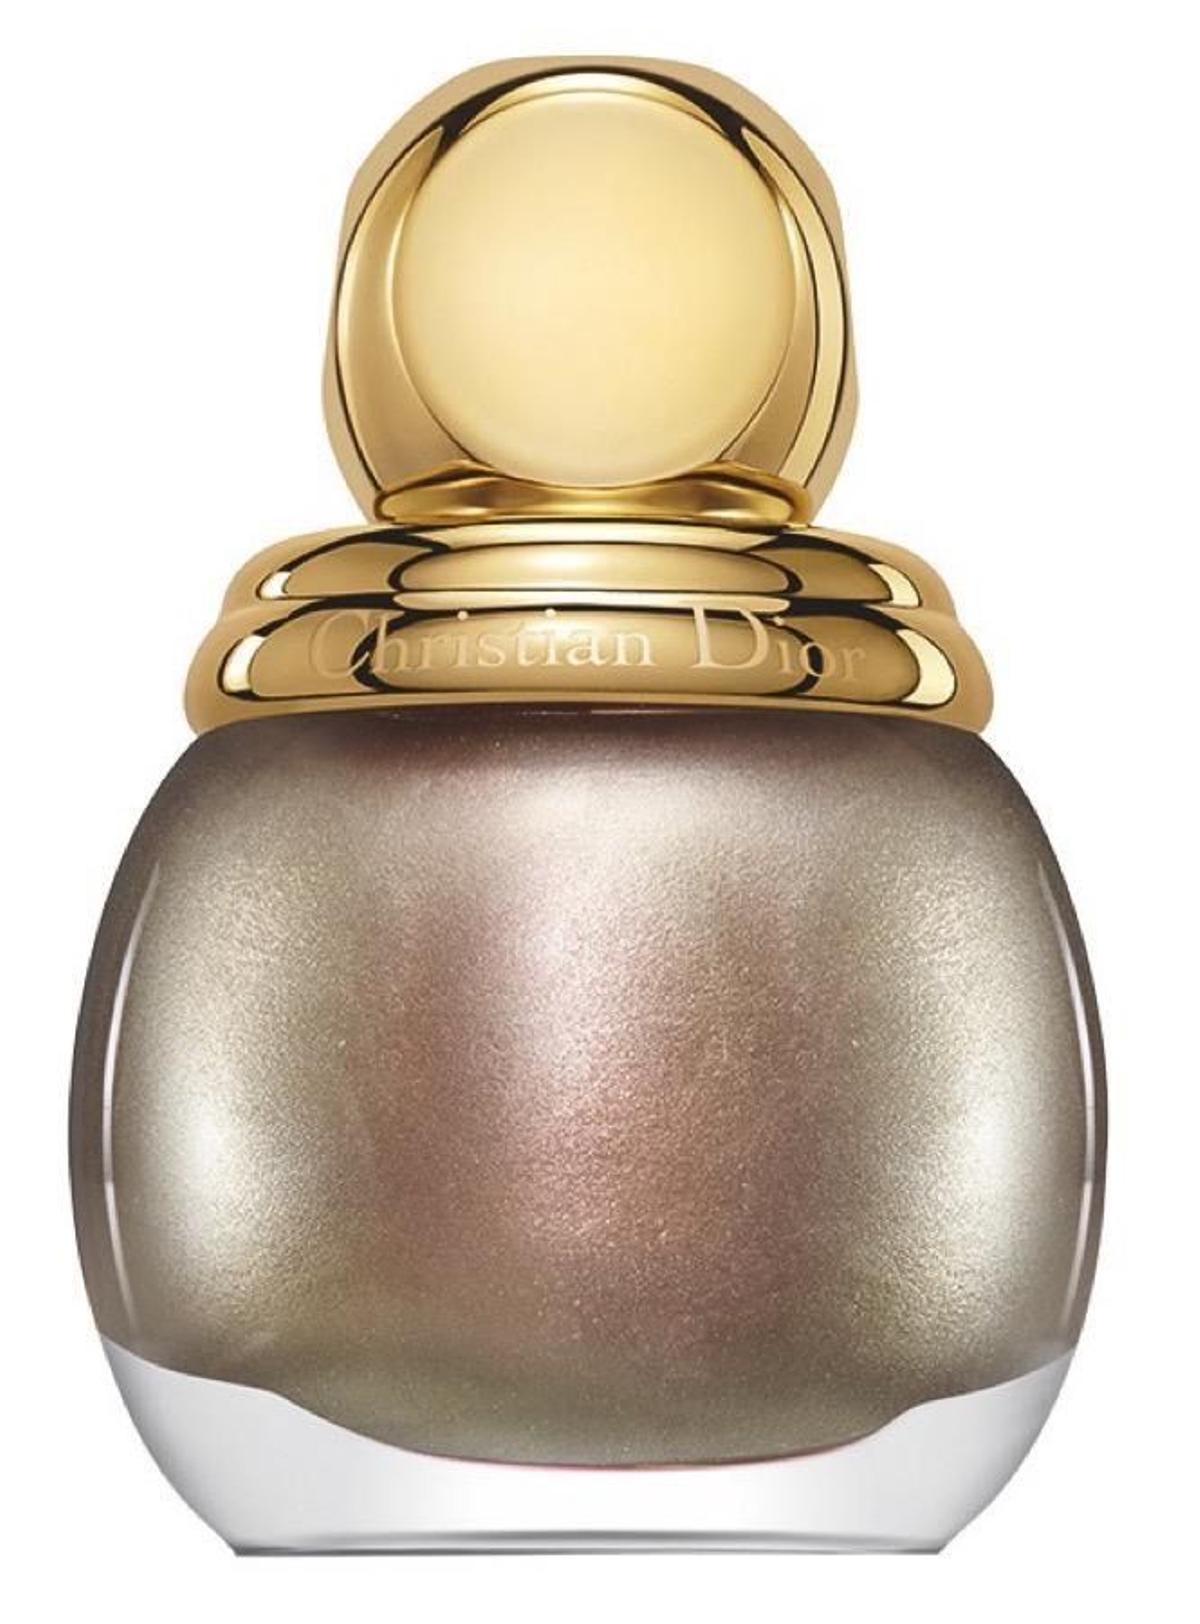 Maquillaje oro en Navidad: laca de uñas State of Gold de Dior